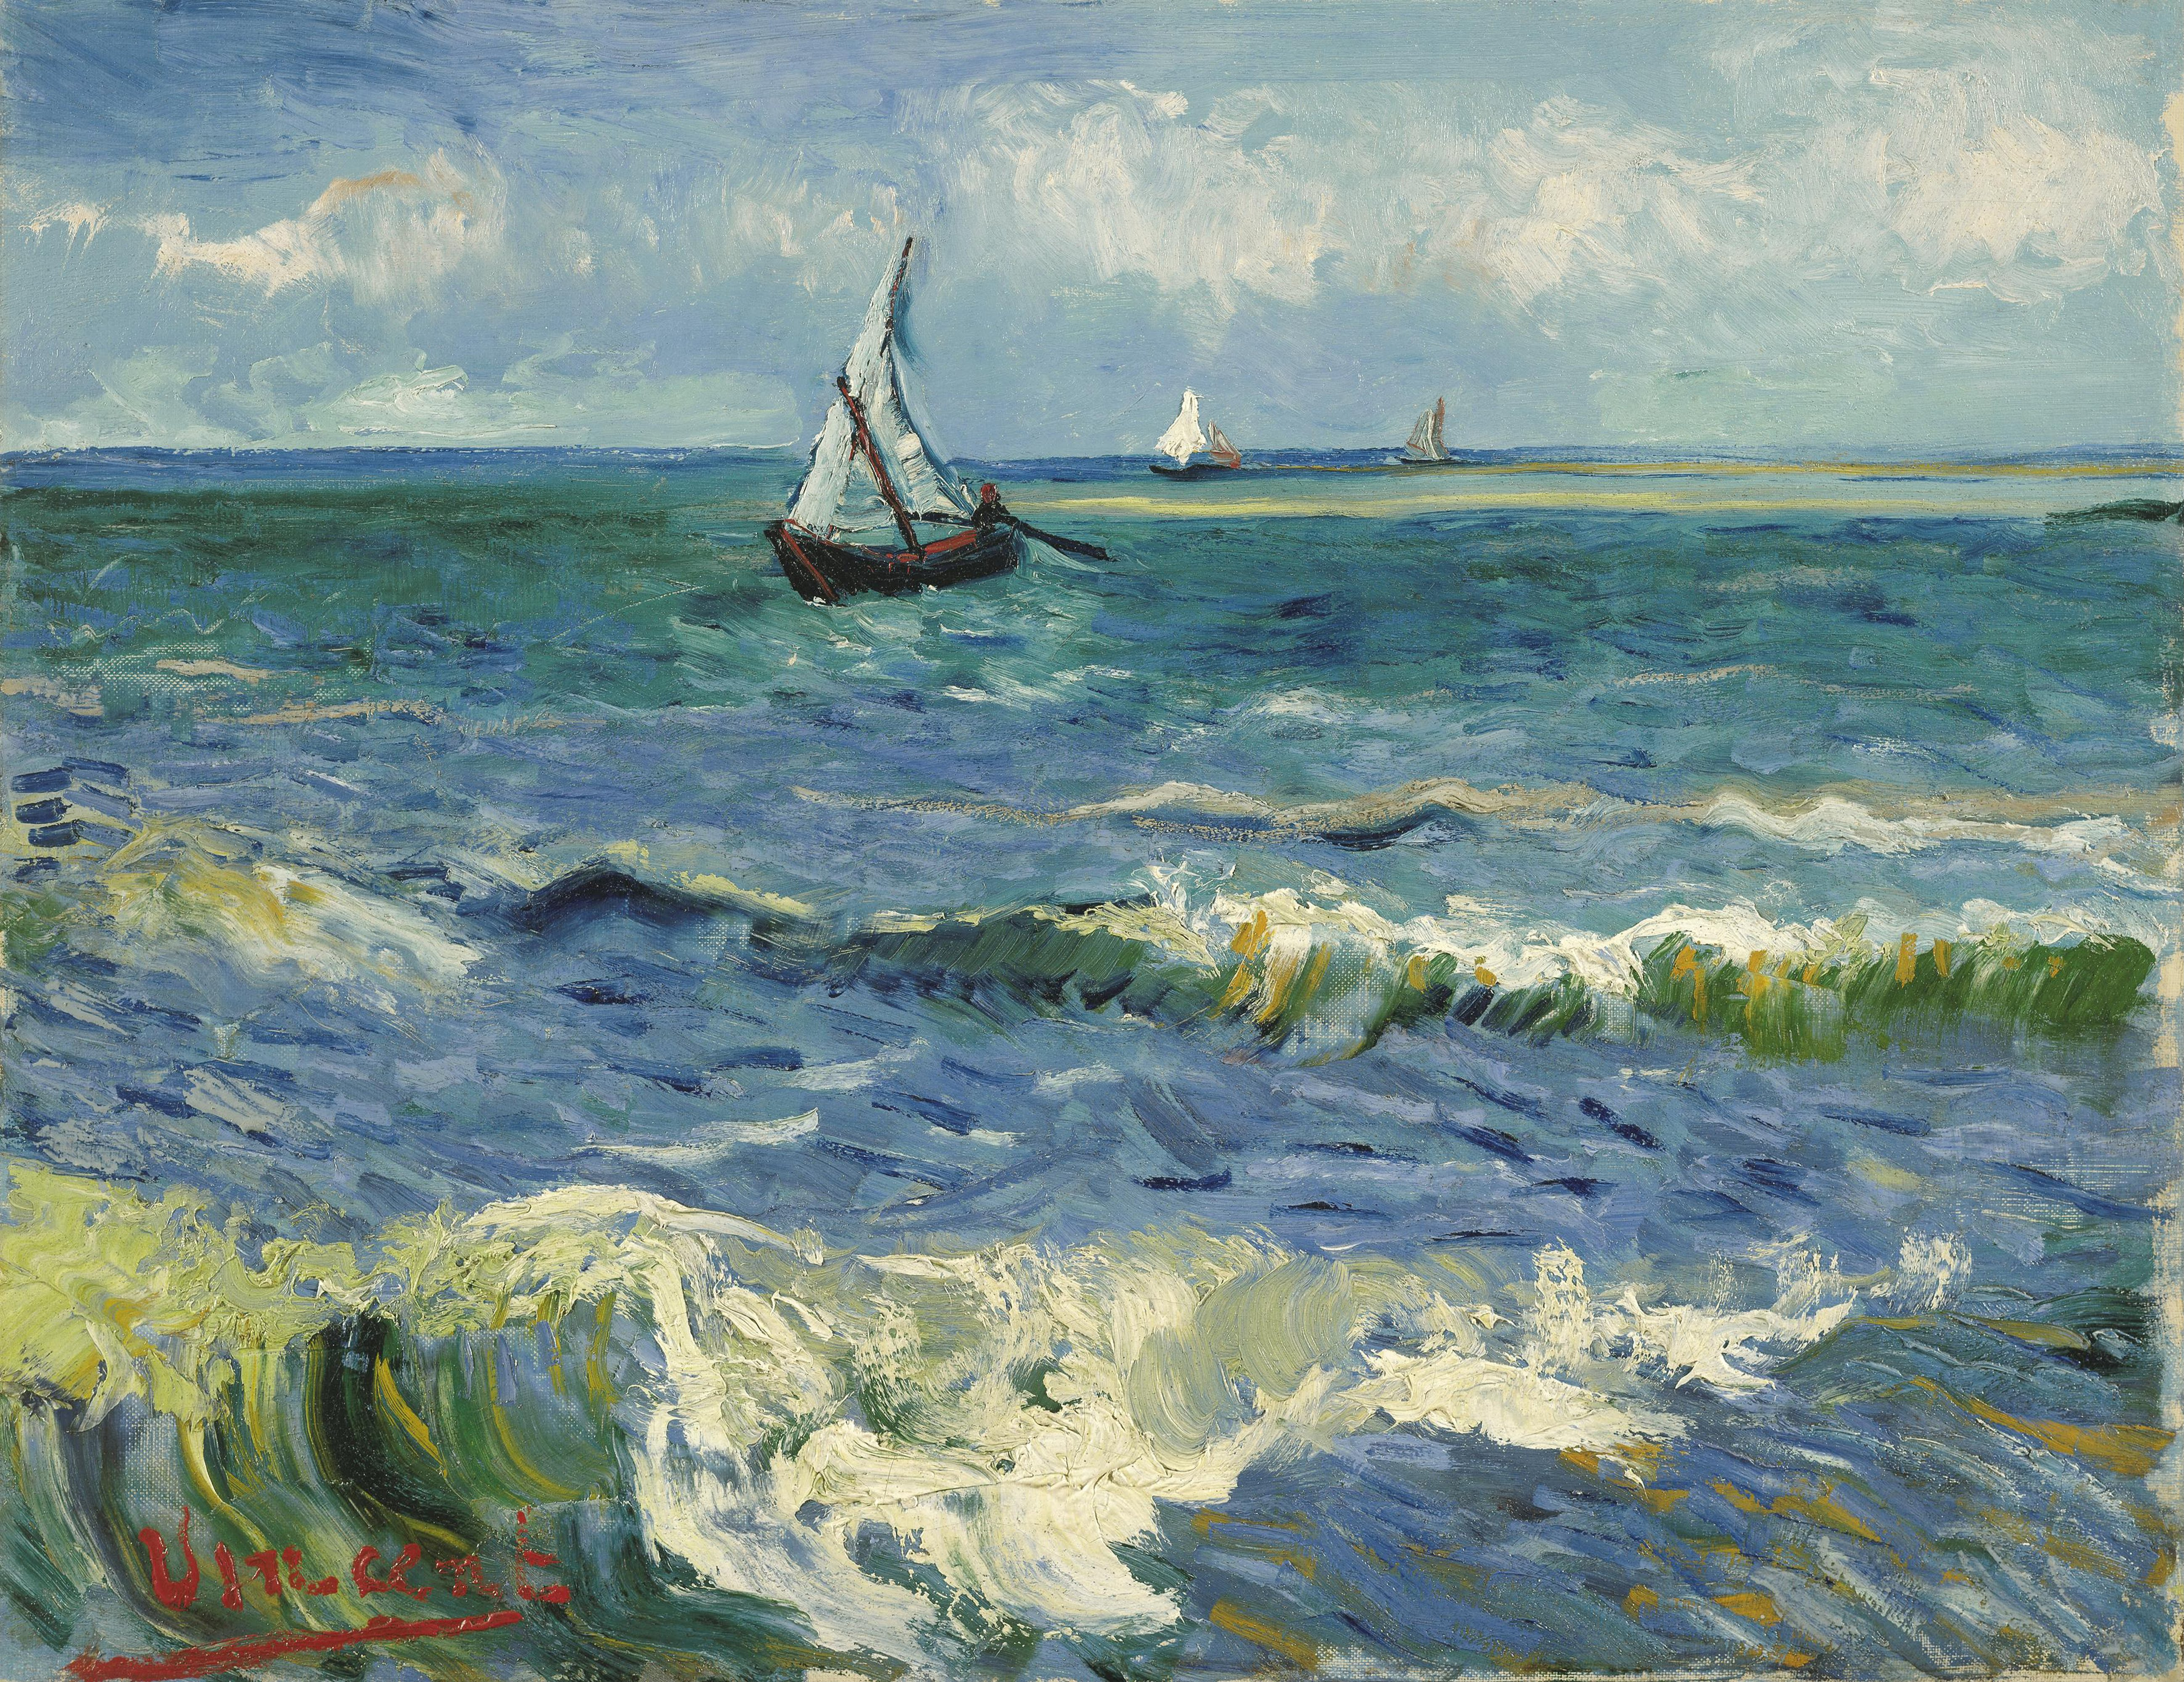 Paisagem Marinha perto de Les Saintes-Maries-de-la-Mer by Vincent van Gogh - 1888 - 50.5 x 64.3 cm Van Gogh Museum